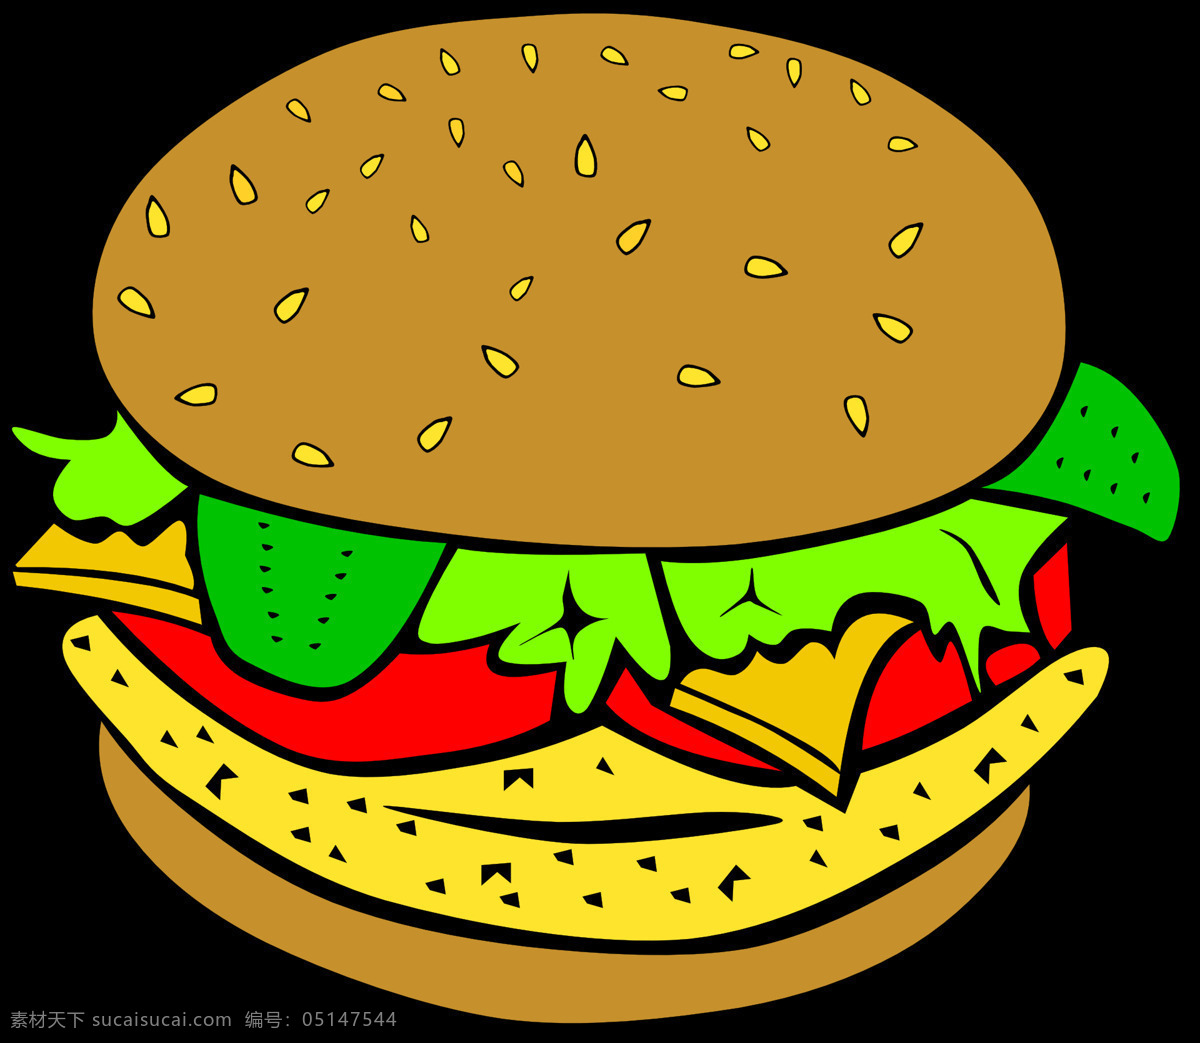 汉堡包 汉堡 快餐 面包 夹心汉堡 卡通 手绘 卡通设计